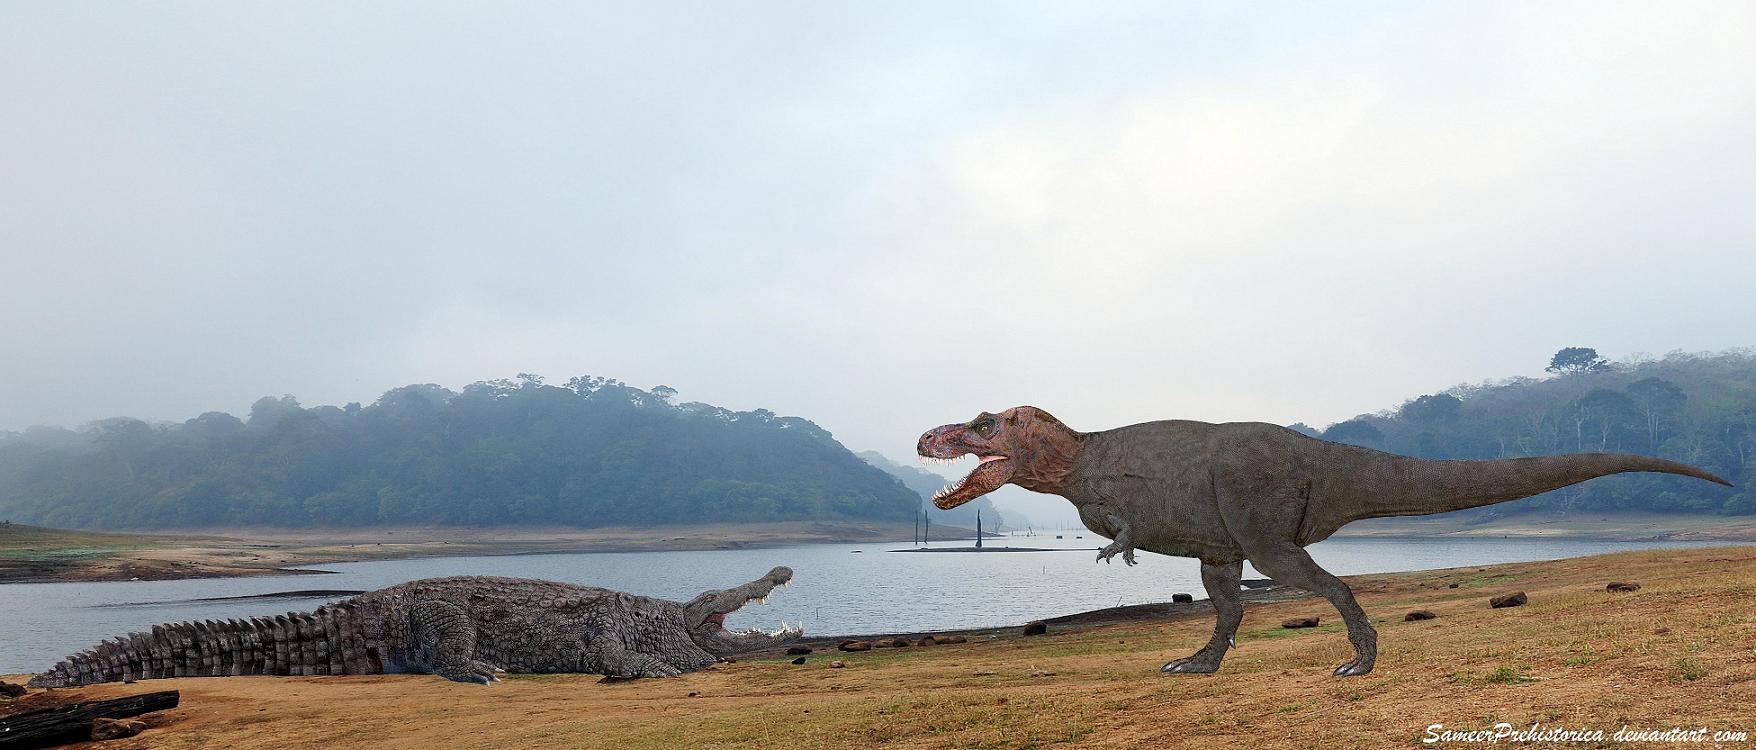 http://fc05.deviantart.net/fs71/f/2013/149/4/5/tyrannosaurus_rex_vs_deinosuchus_by_sameerprehistorica-d5kgagr.jpg